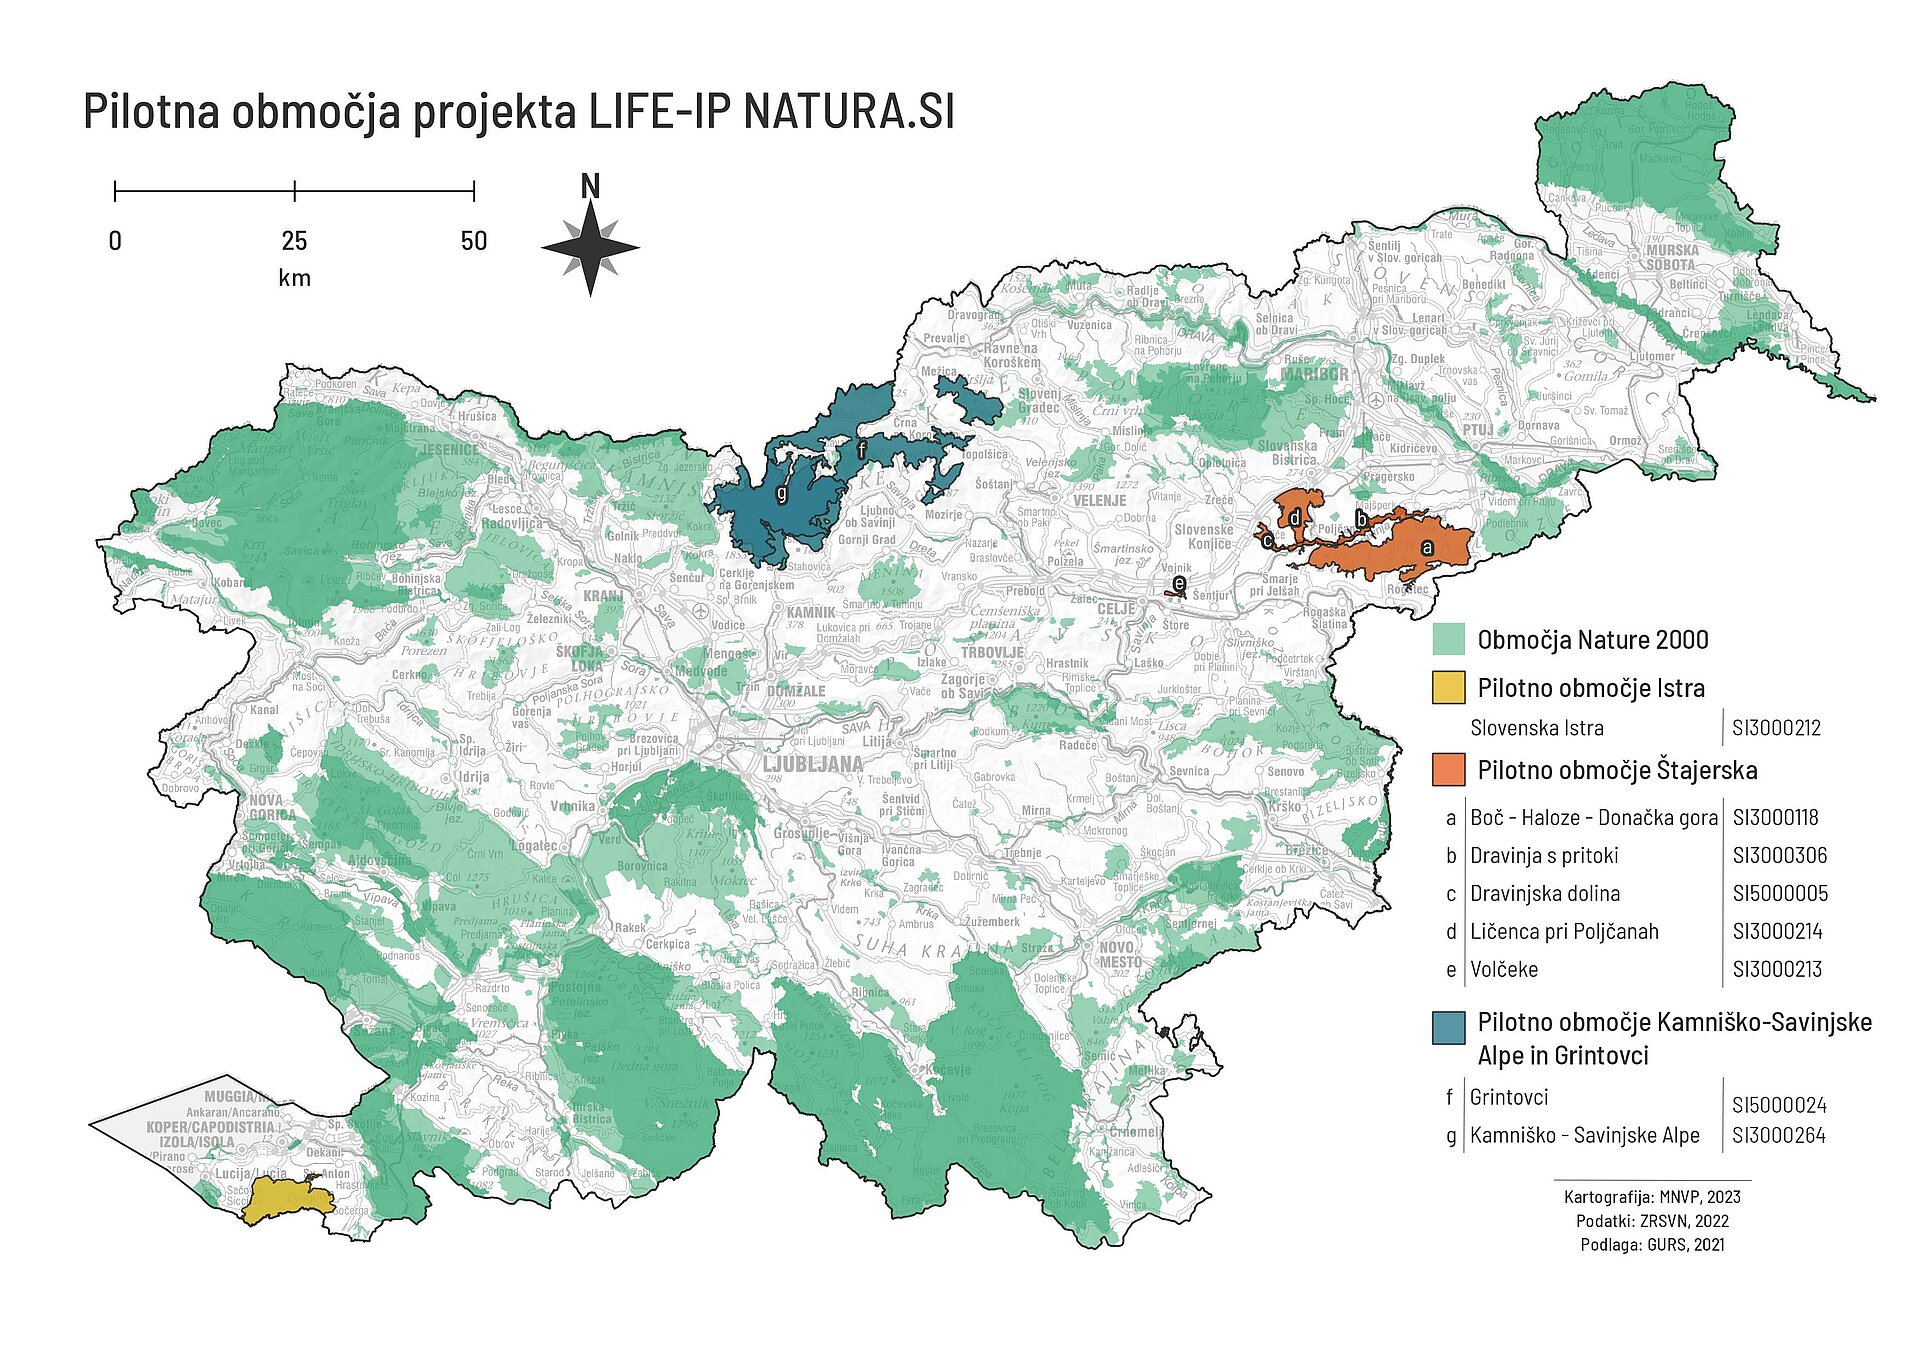 Karta območij Nature 2000 v Sloveniji. Z različnimi barvami so označena pilotna območja projekta LIFE-IP NATURA.SI